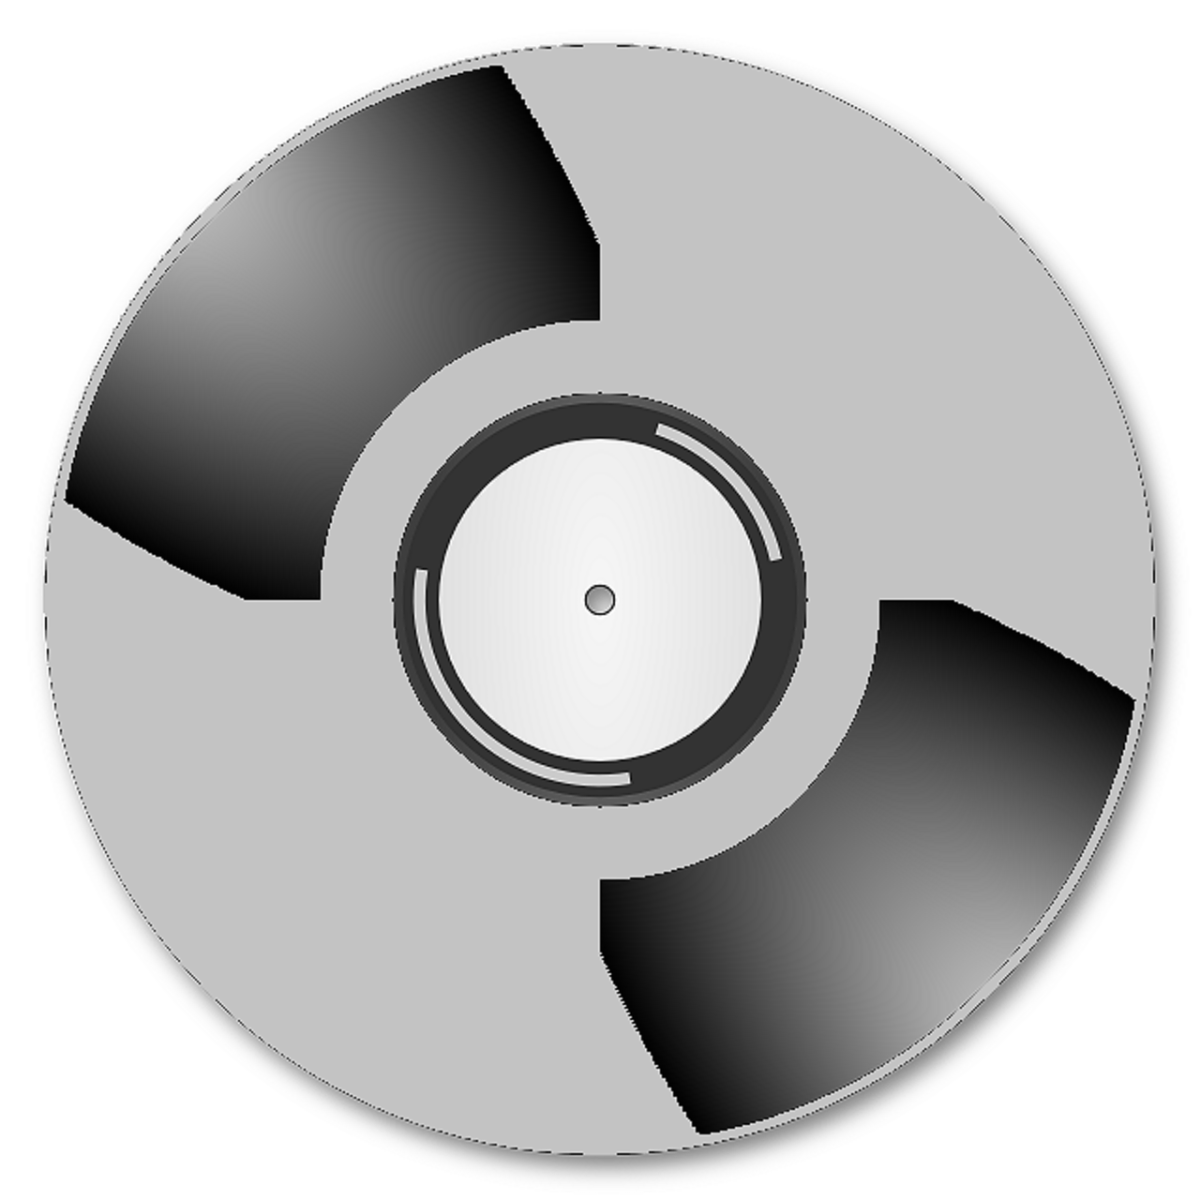 Компьютерный диск. CD диск без фона. Музыкальный диск. Изображение на компактном диске.